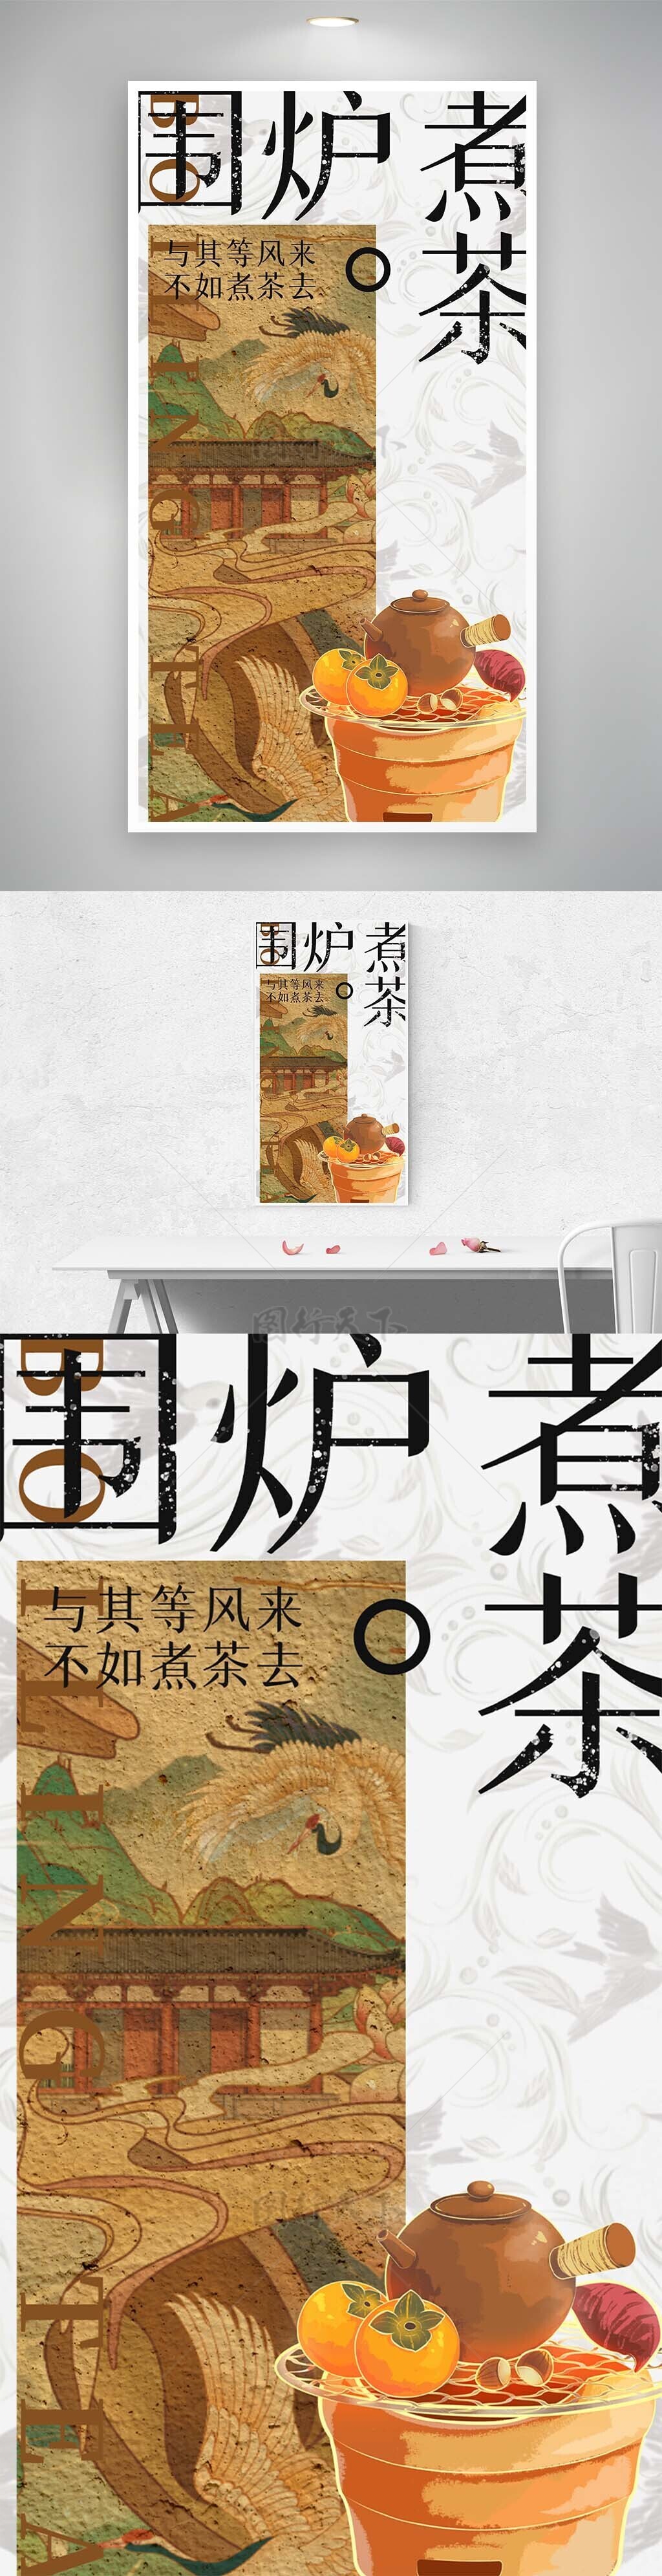 围炉煮茶古典国画创意宣传海报设计